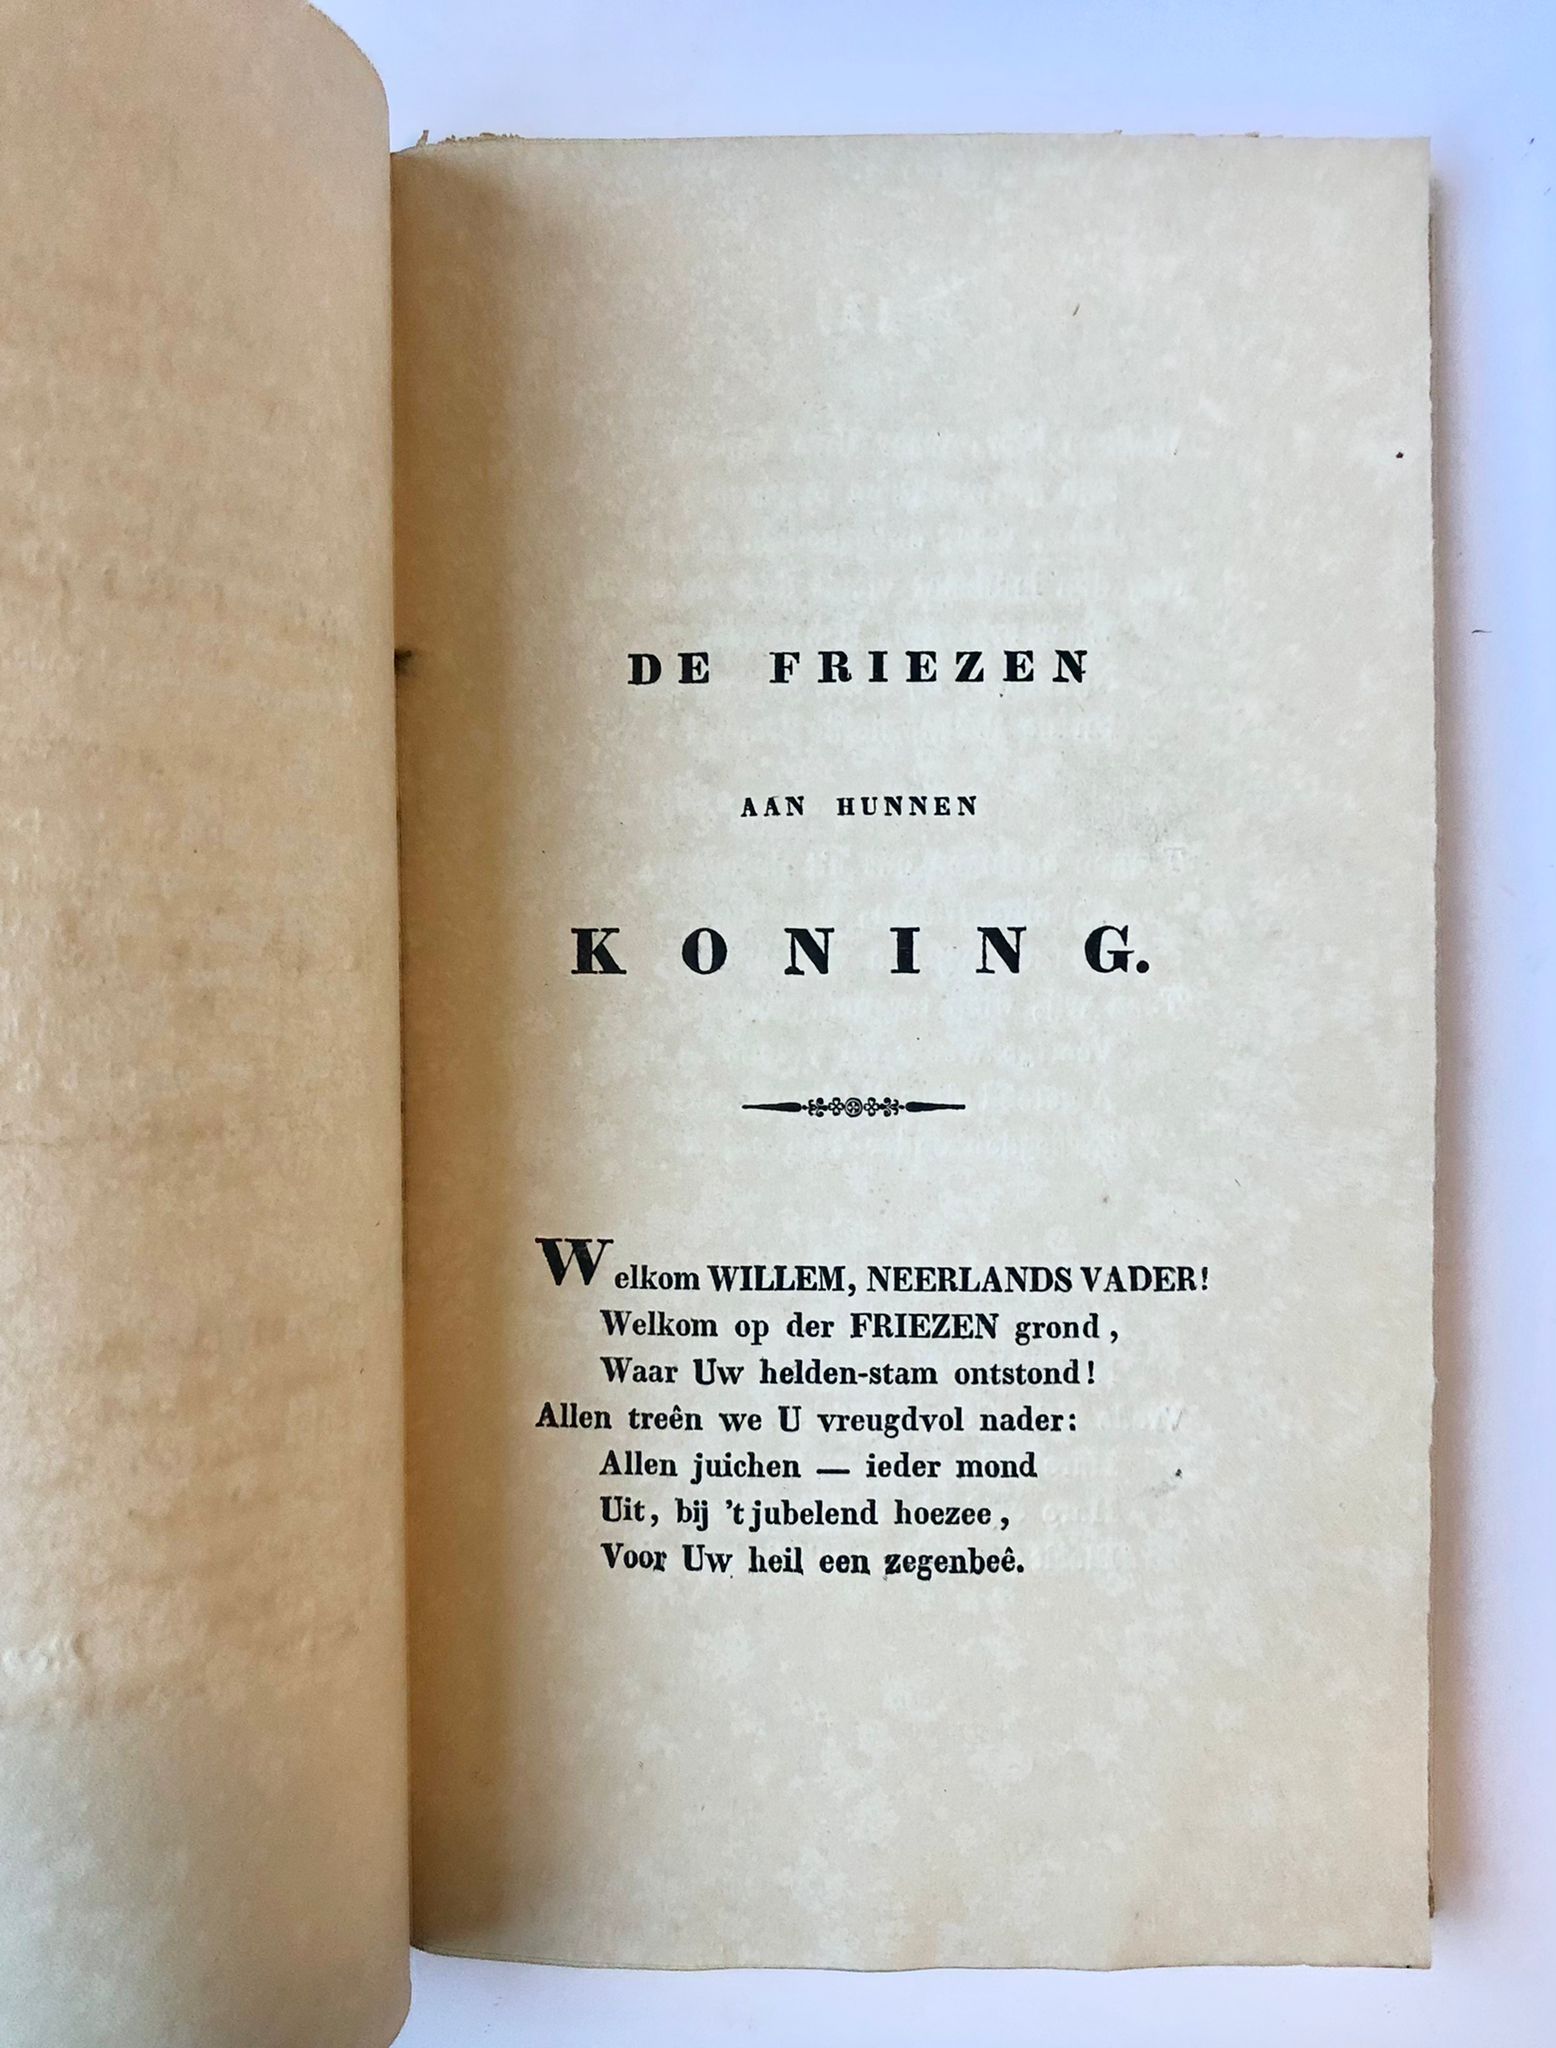 [Leeuwarden, 1830] De Friezen aan hunnen Koning, bij hoogstdeszelfs komst te Leeuwarden, op den 23sten Julij 1830. Tweede druk. Bij G. T. N. Suringar, Leeuwarden, 8 pp.